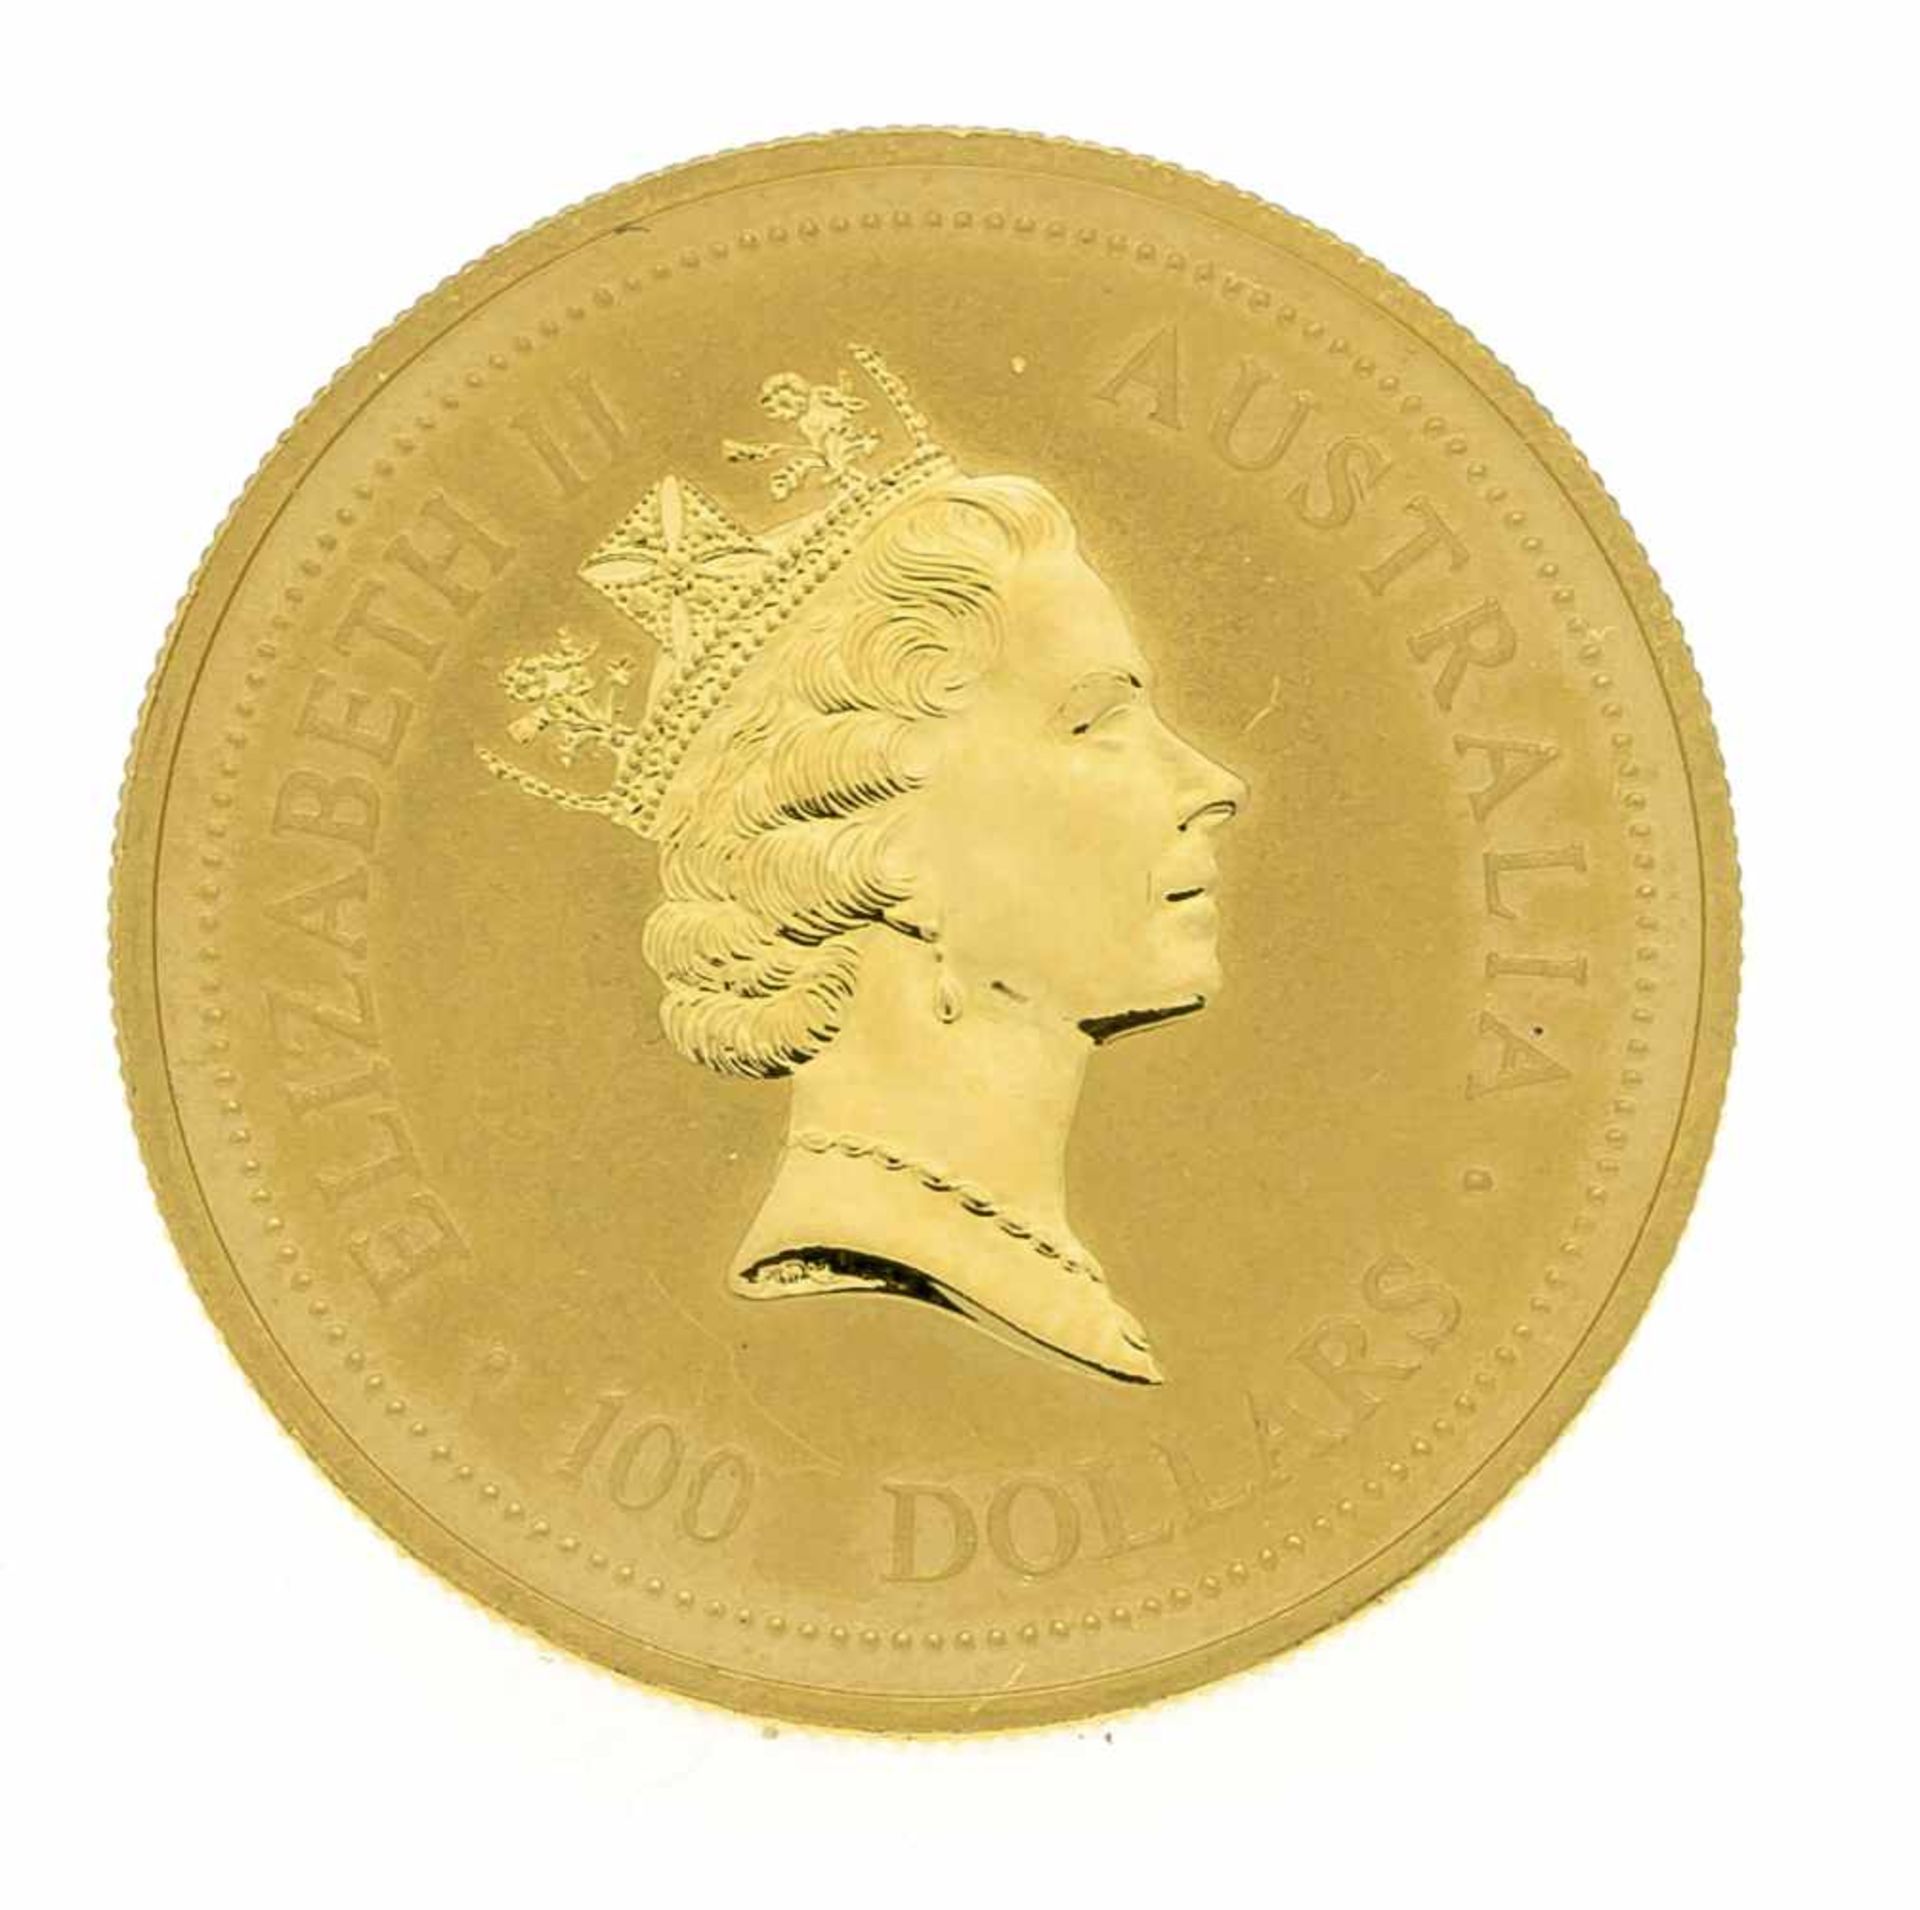 Goldene Anlagemünze. 100 Australische Dollar 1994, 1 oz, 999/1000, Dm. 31,8mm- - -22.69 % buyer's